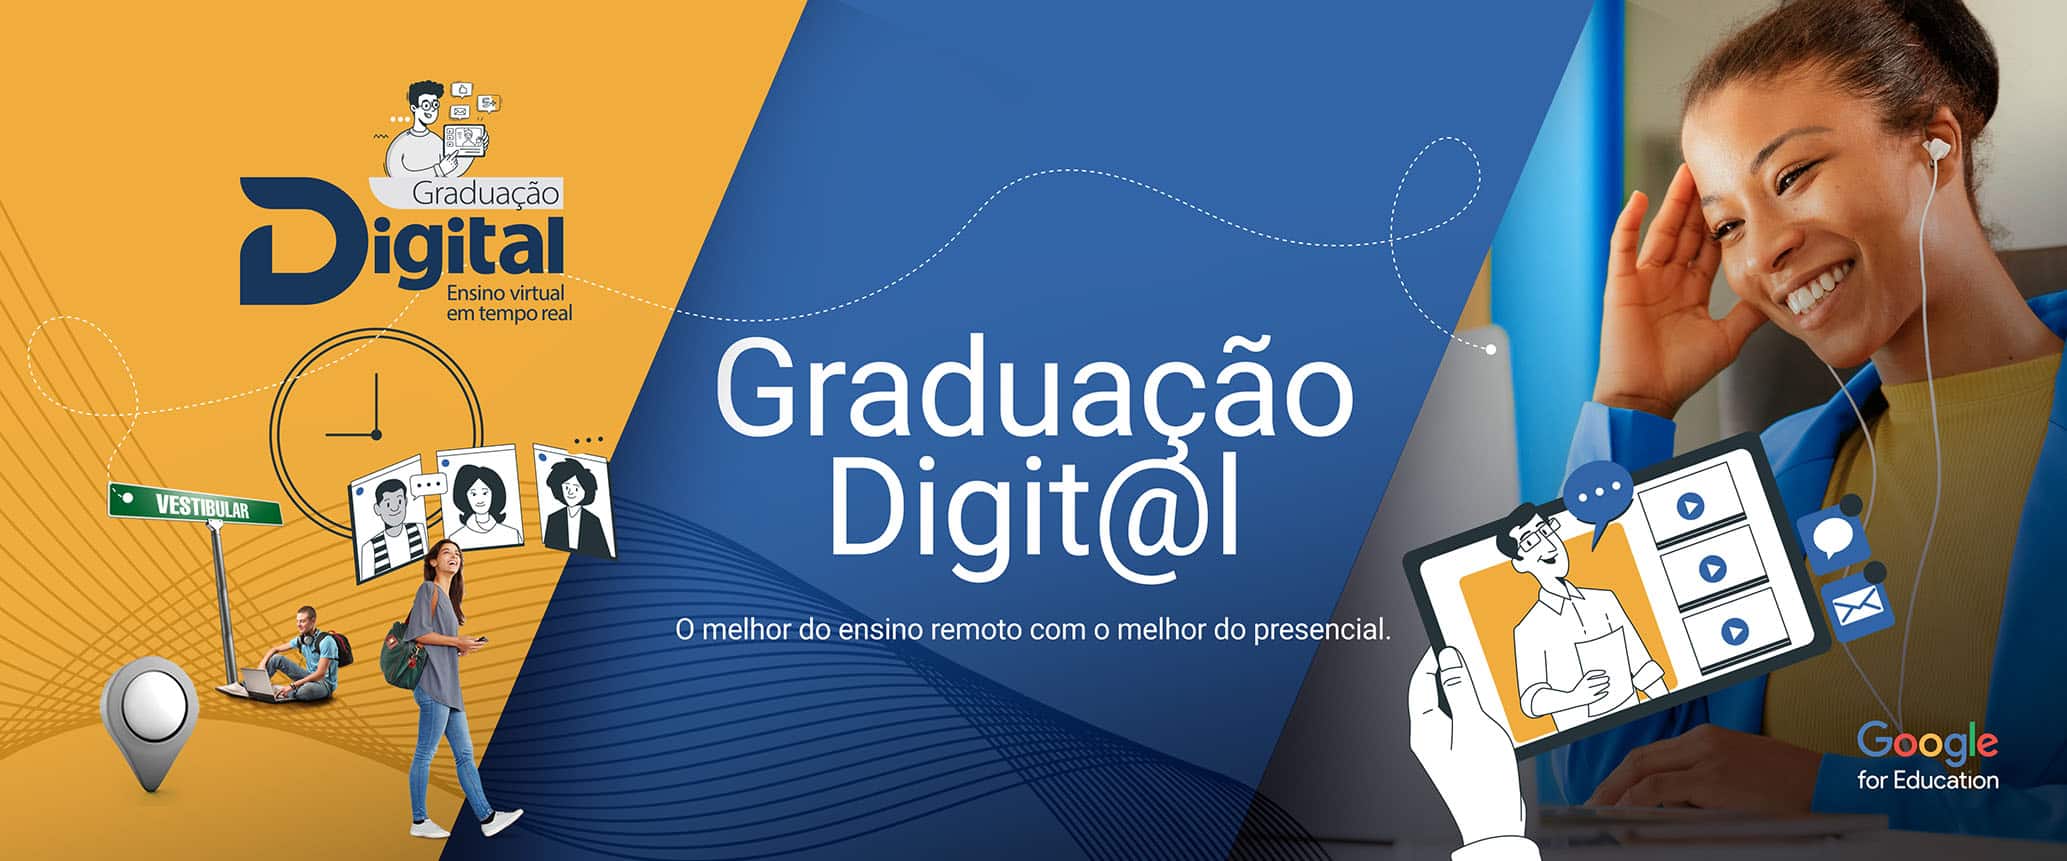 graduacao_digital_icesp